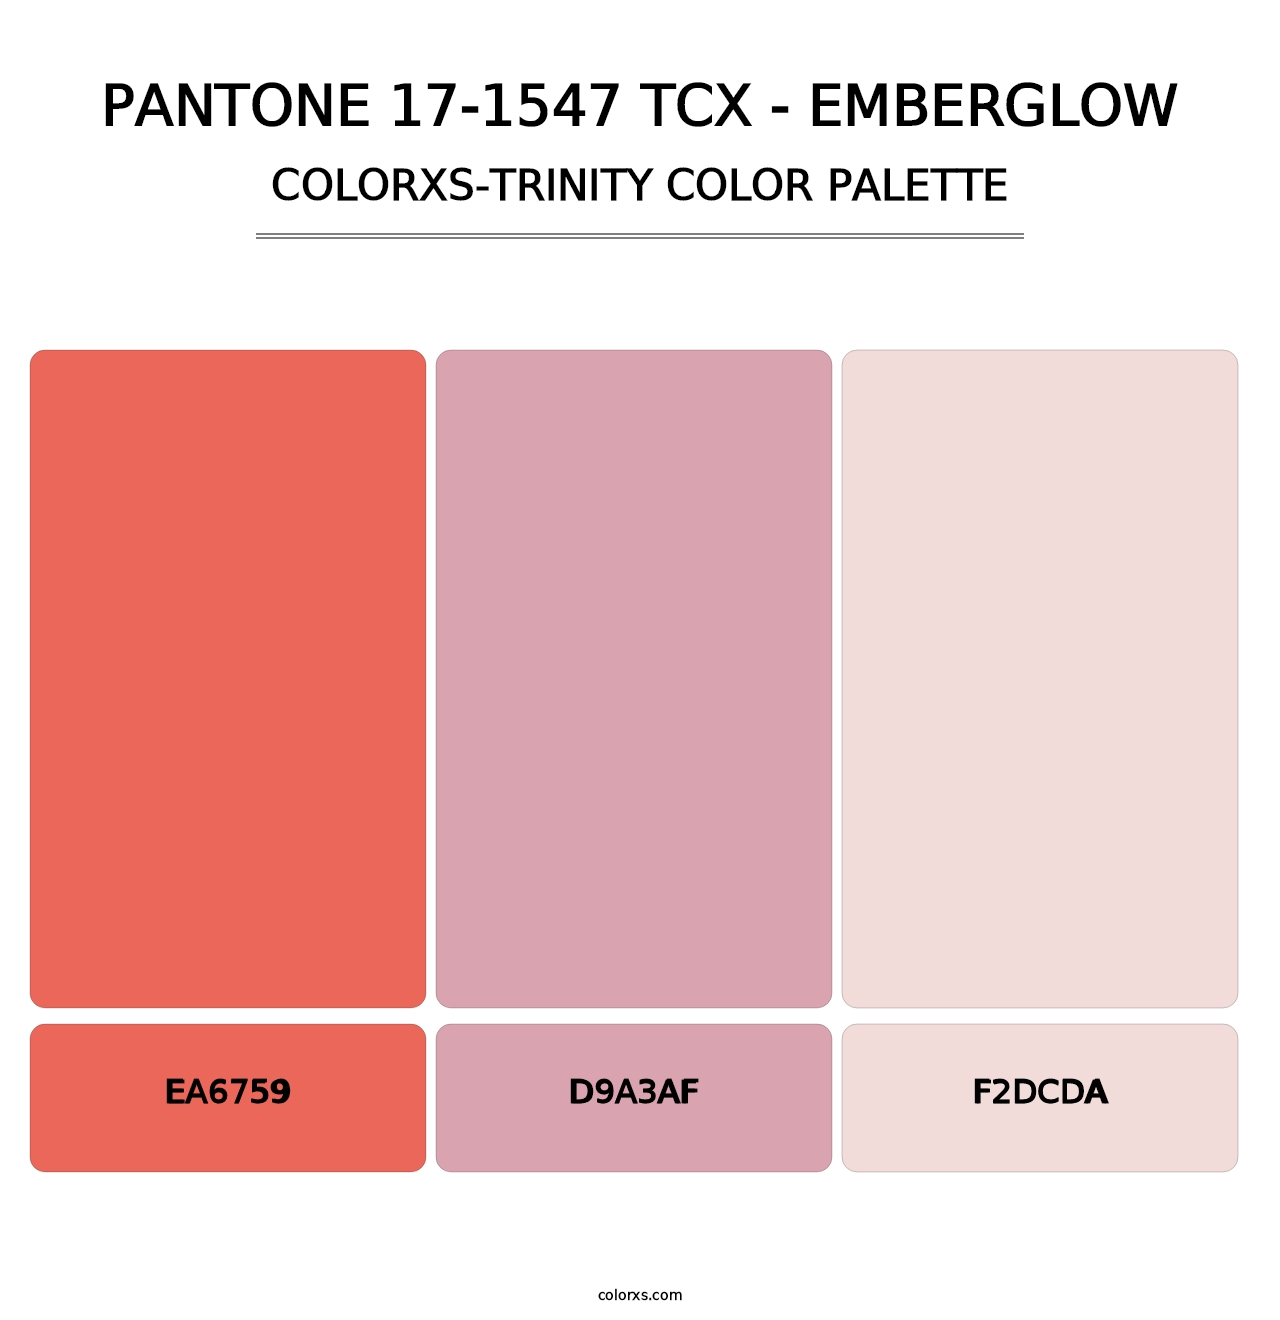 PANTONE 17-1547 TCX - Emberglow - Colorxs Trinity Palette